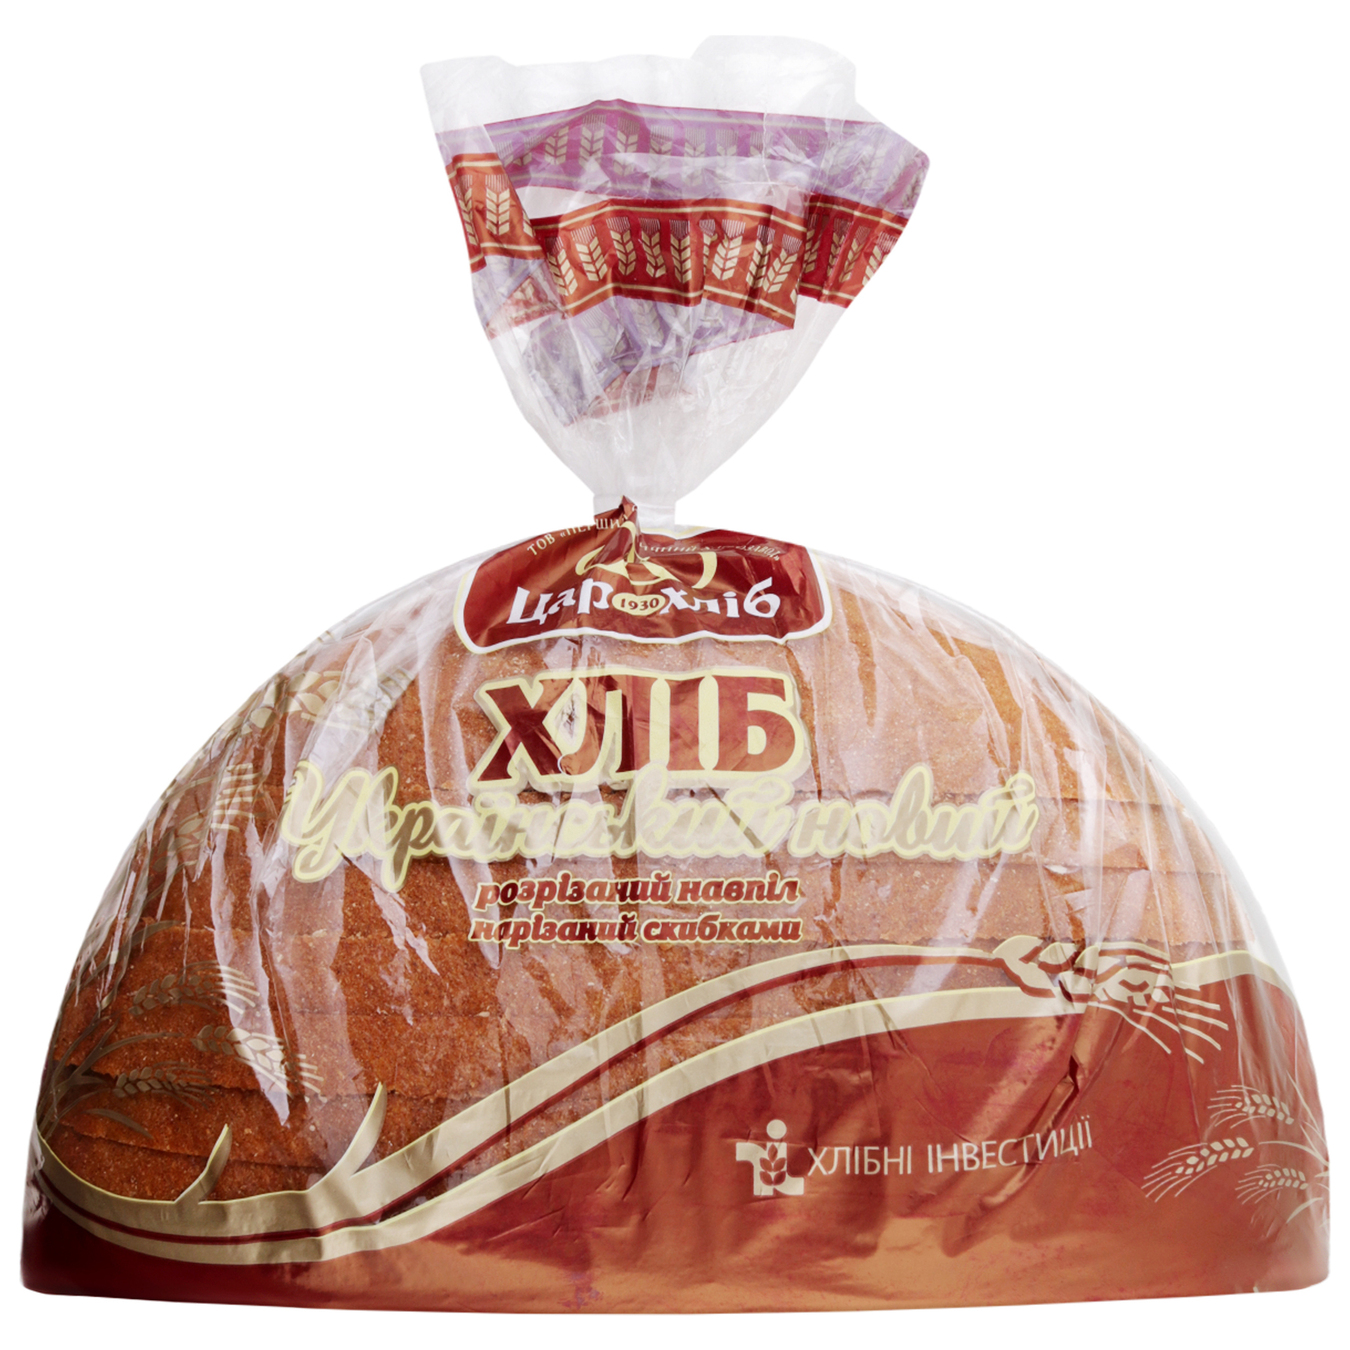 Хлеб Царь хлеб Украинский нарезанный половинка 475г 2